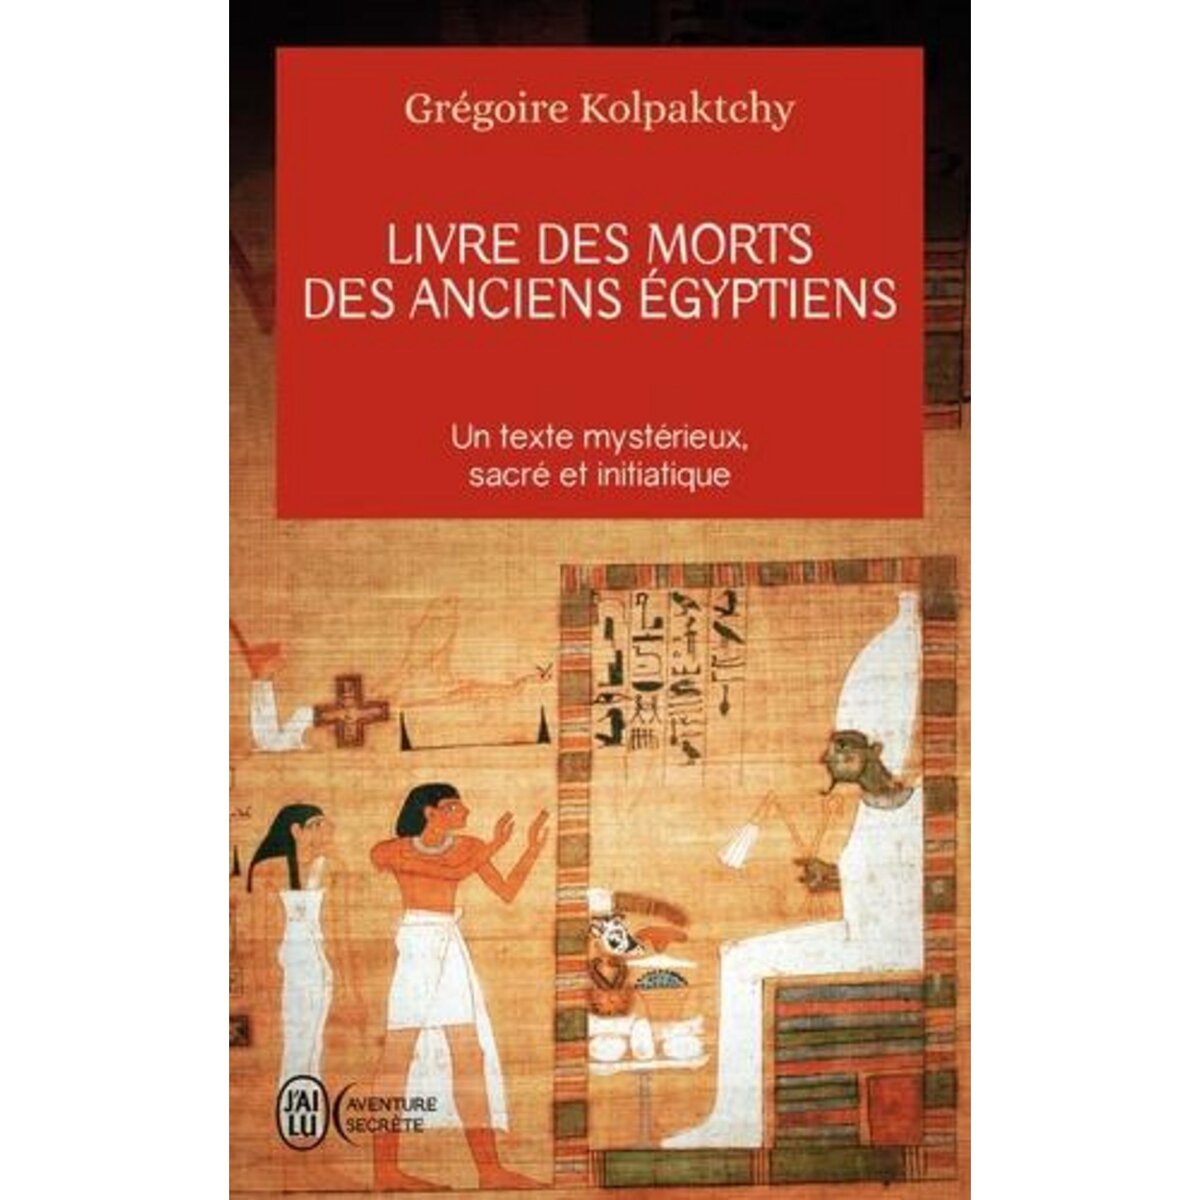  LIVRE DES MORTS DES ANCIENS EGYPTIENS, Kolpaktchy Grégoire